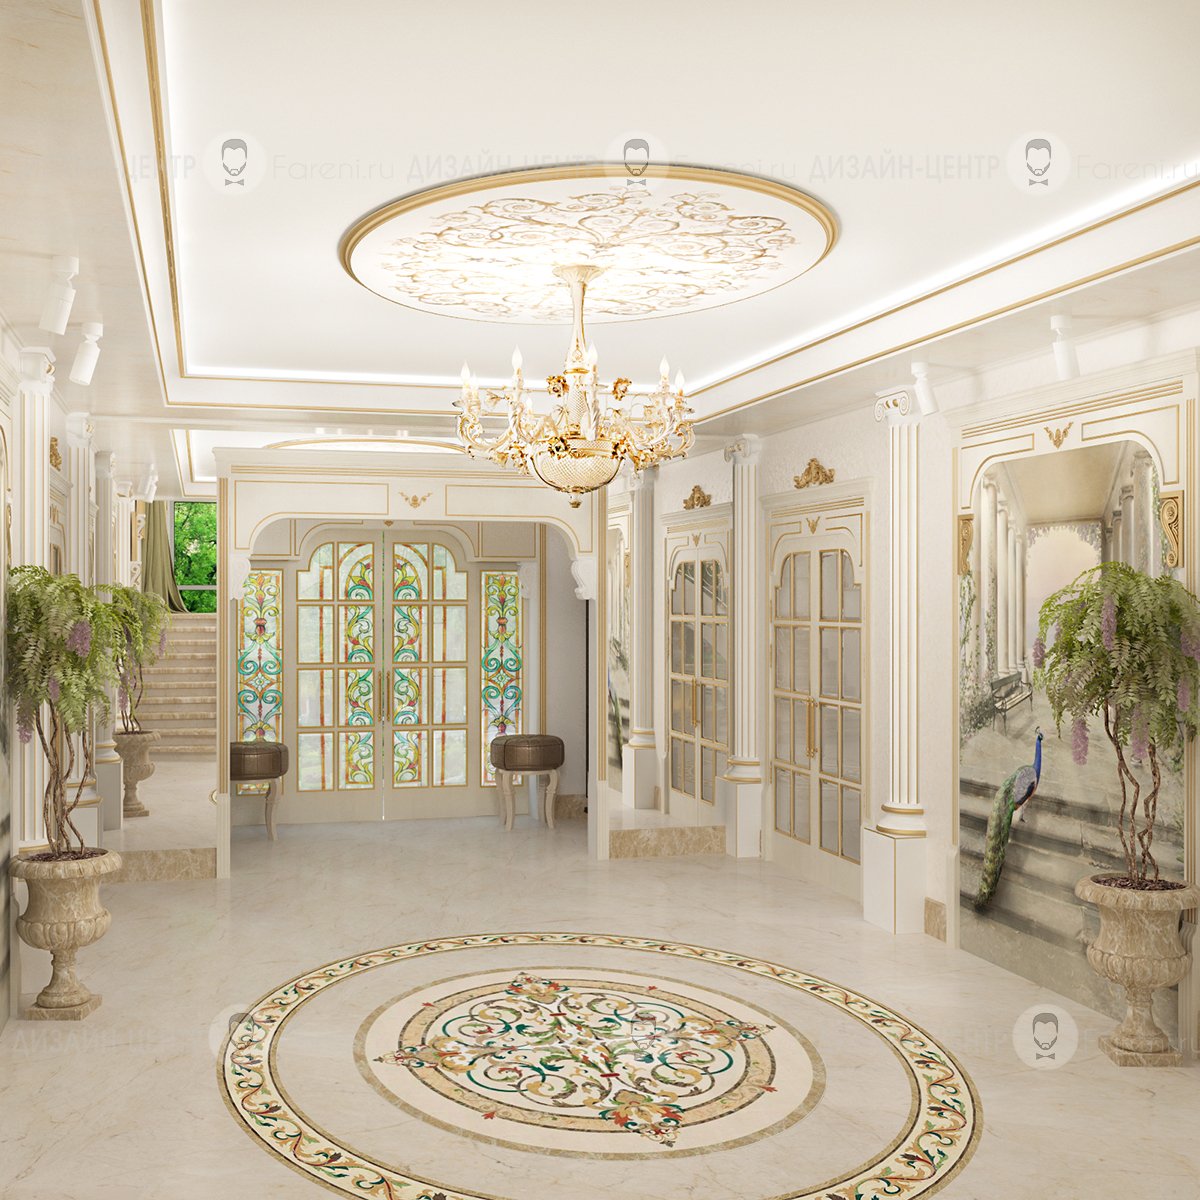 Фото холов. Antonovich Design коридор. Холл в доме. Интерьер холла. Фойе в классическом стиле.